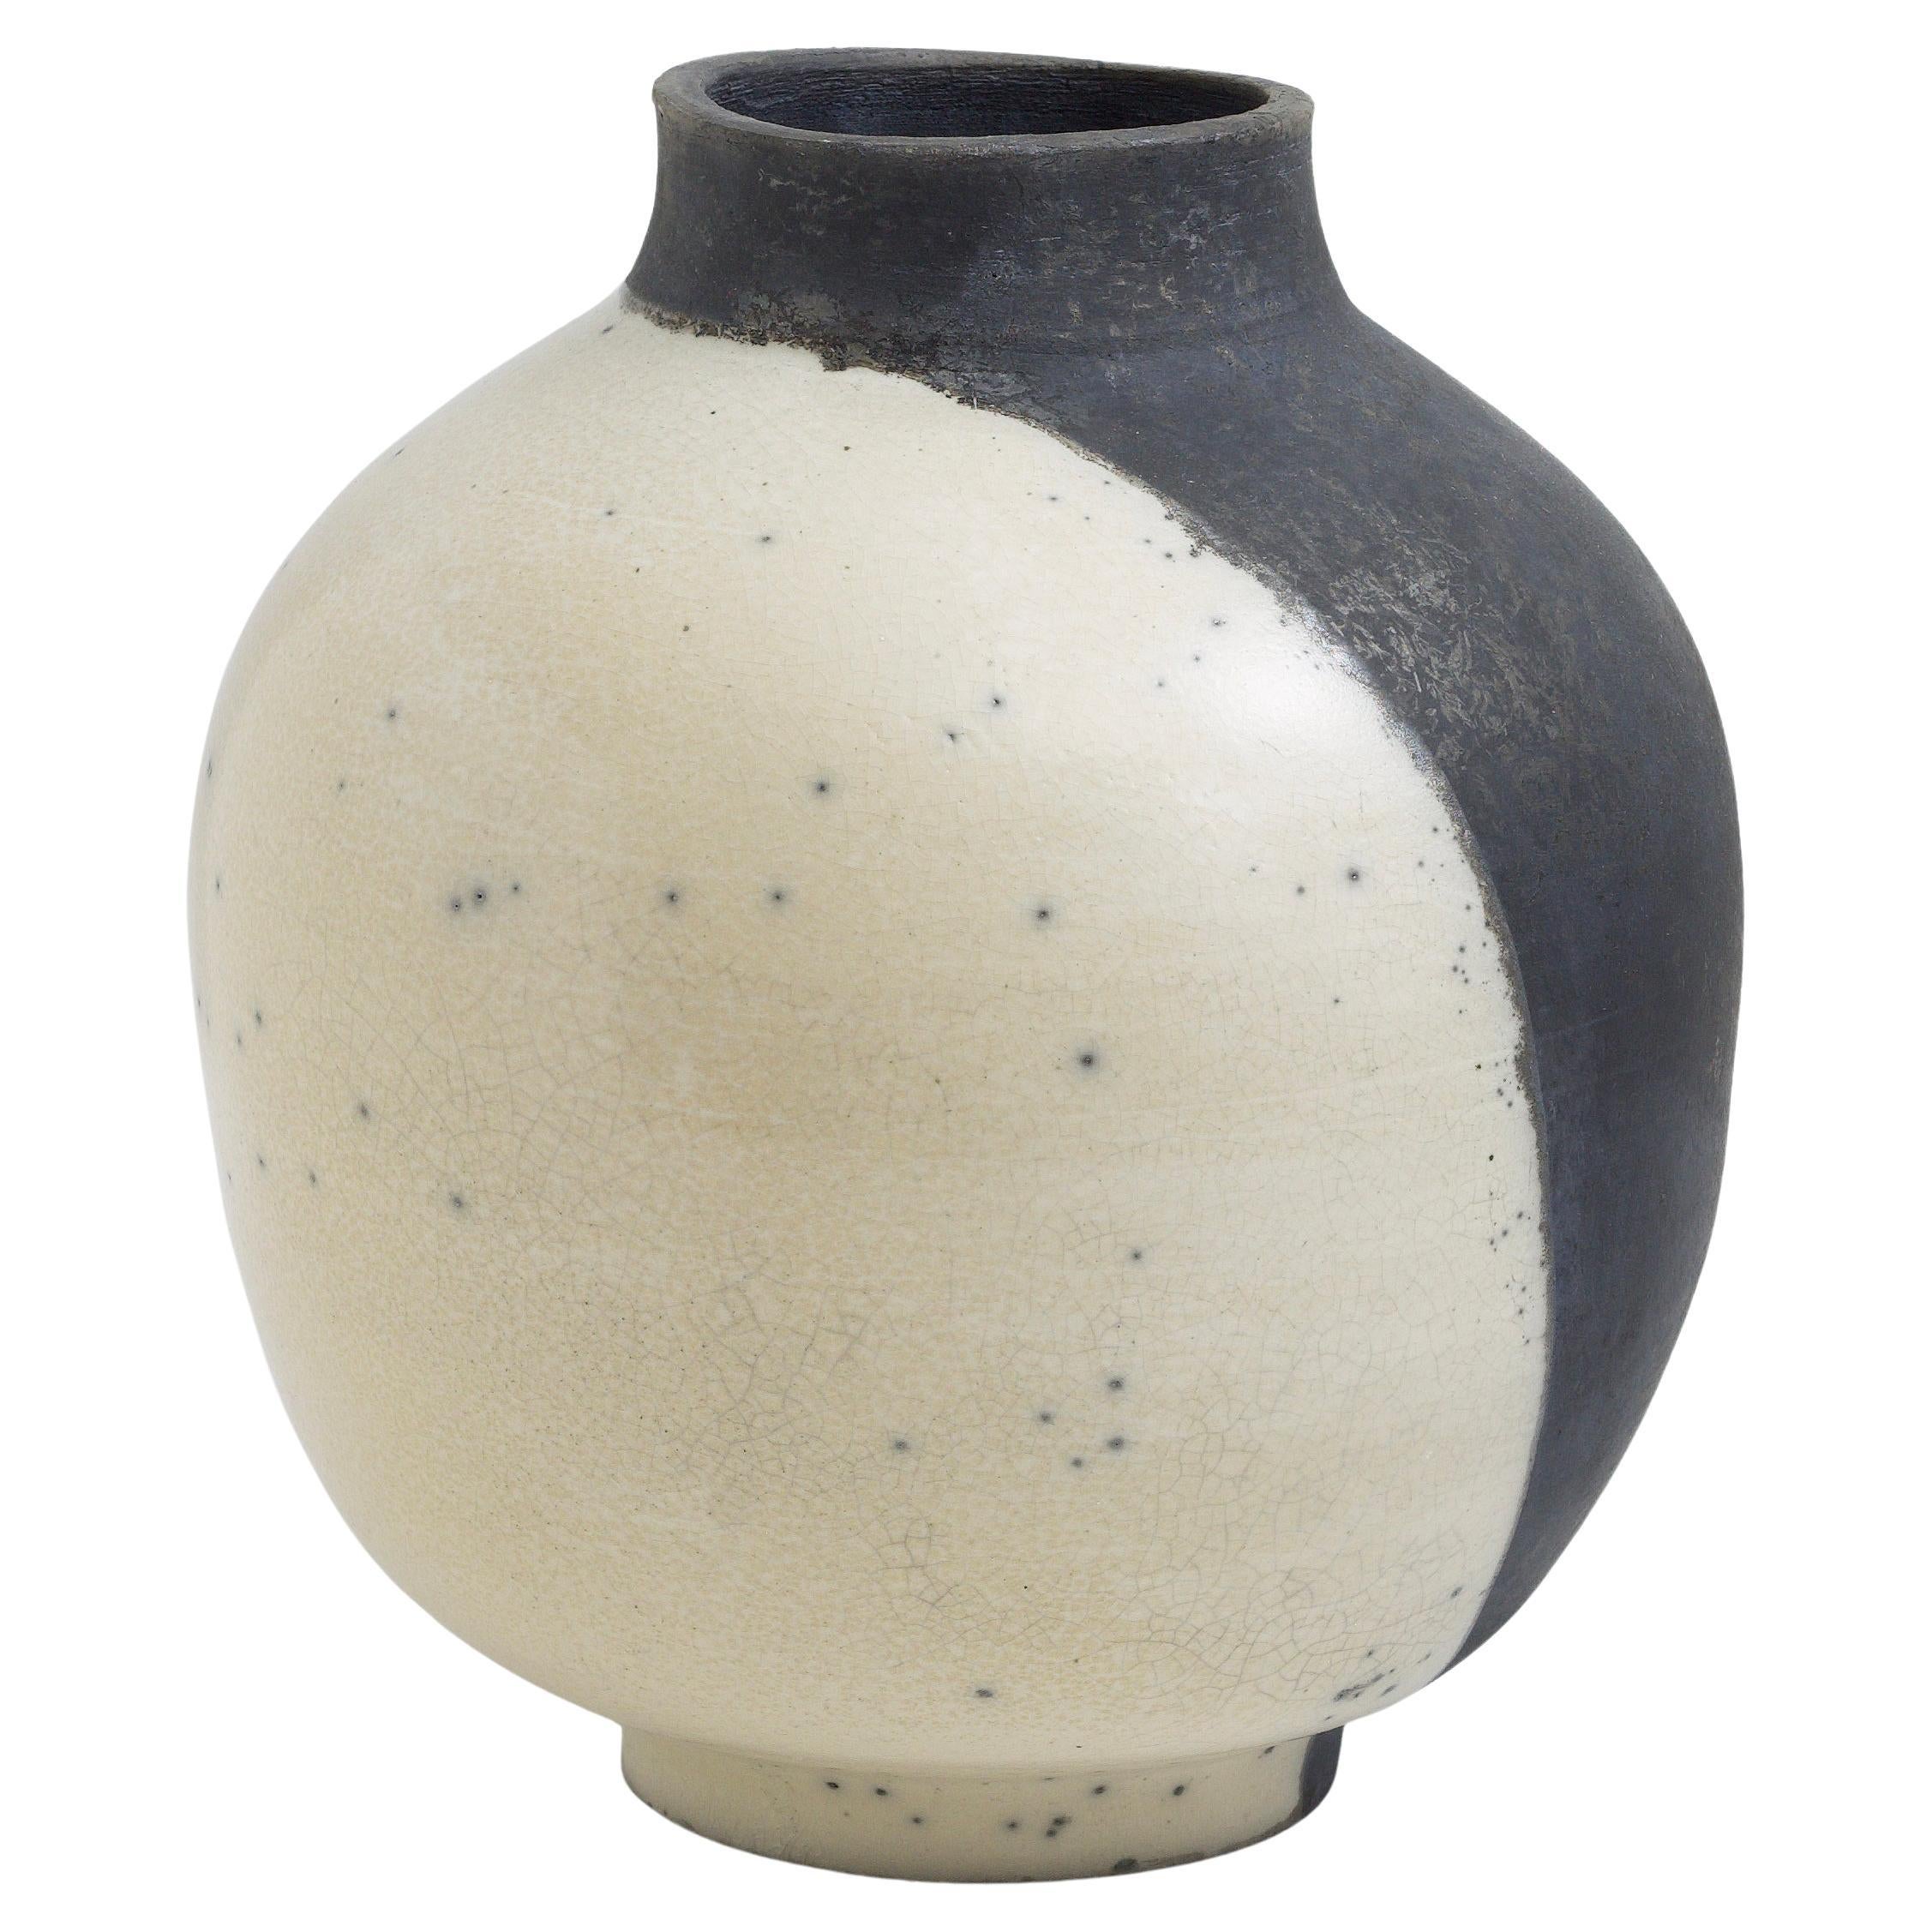 Japanese Modern Minimalist LAAB Shadow Sculpture Raku Ceramic White Black Vase For Sale